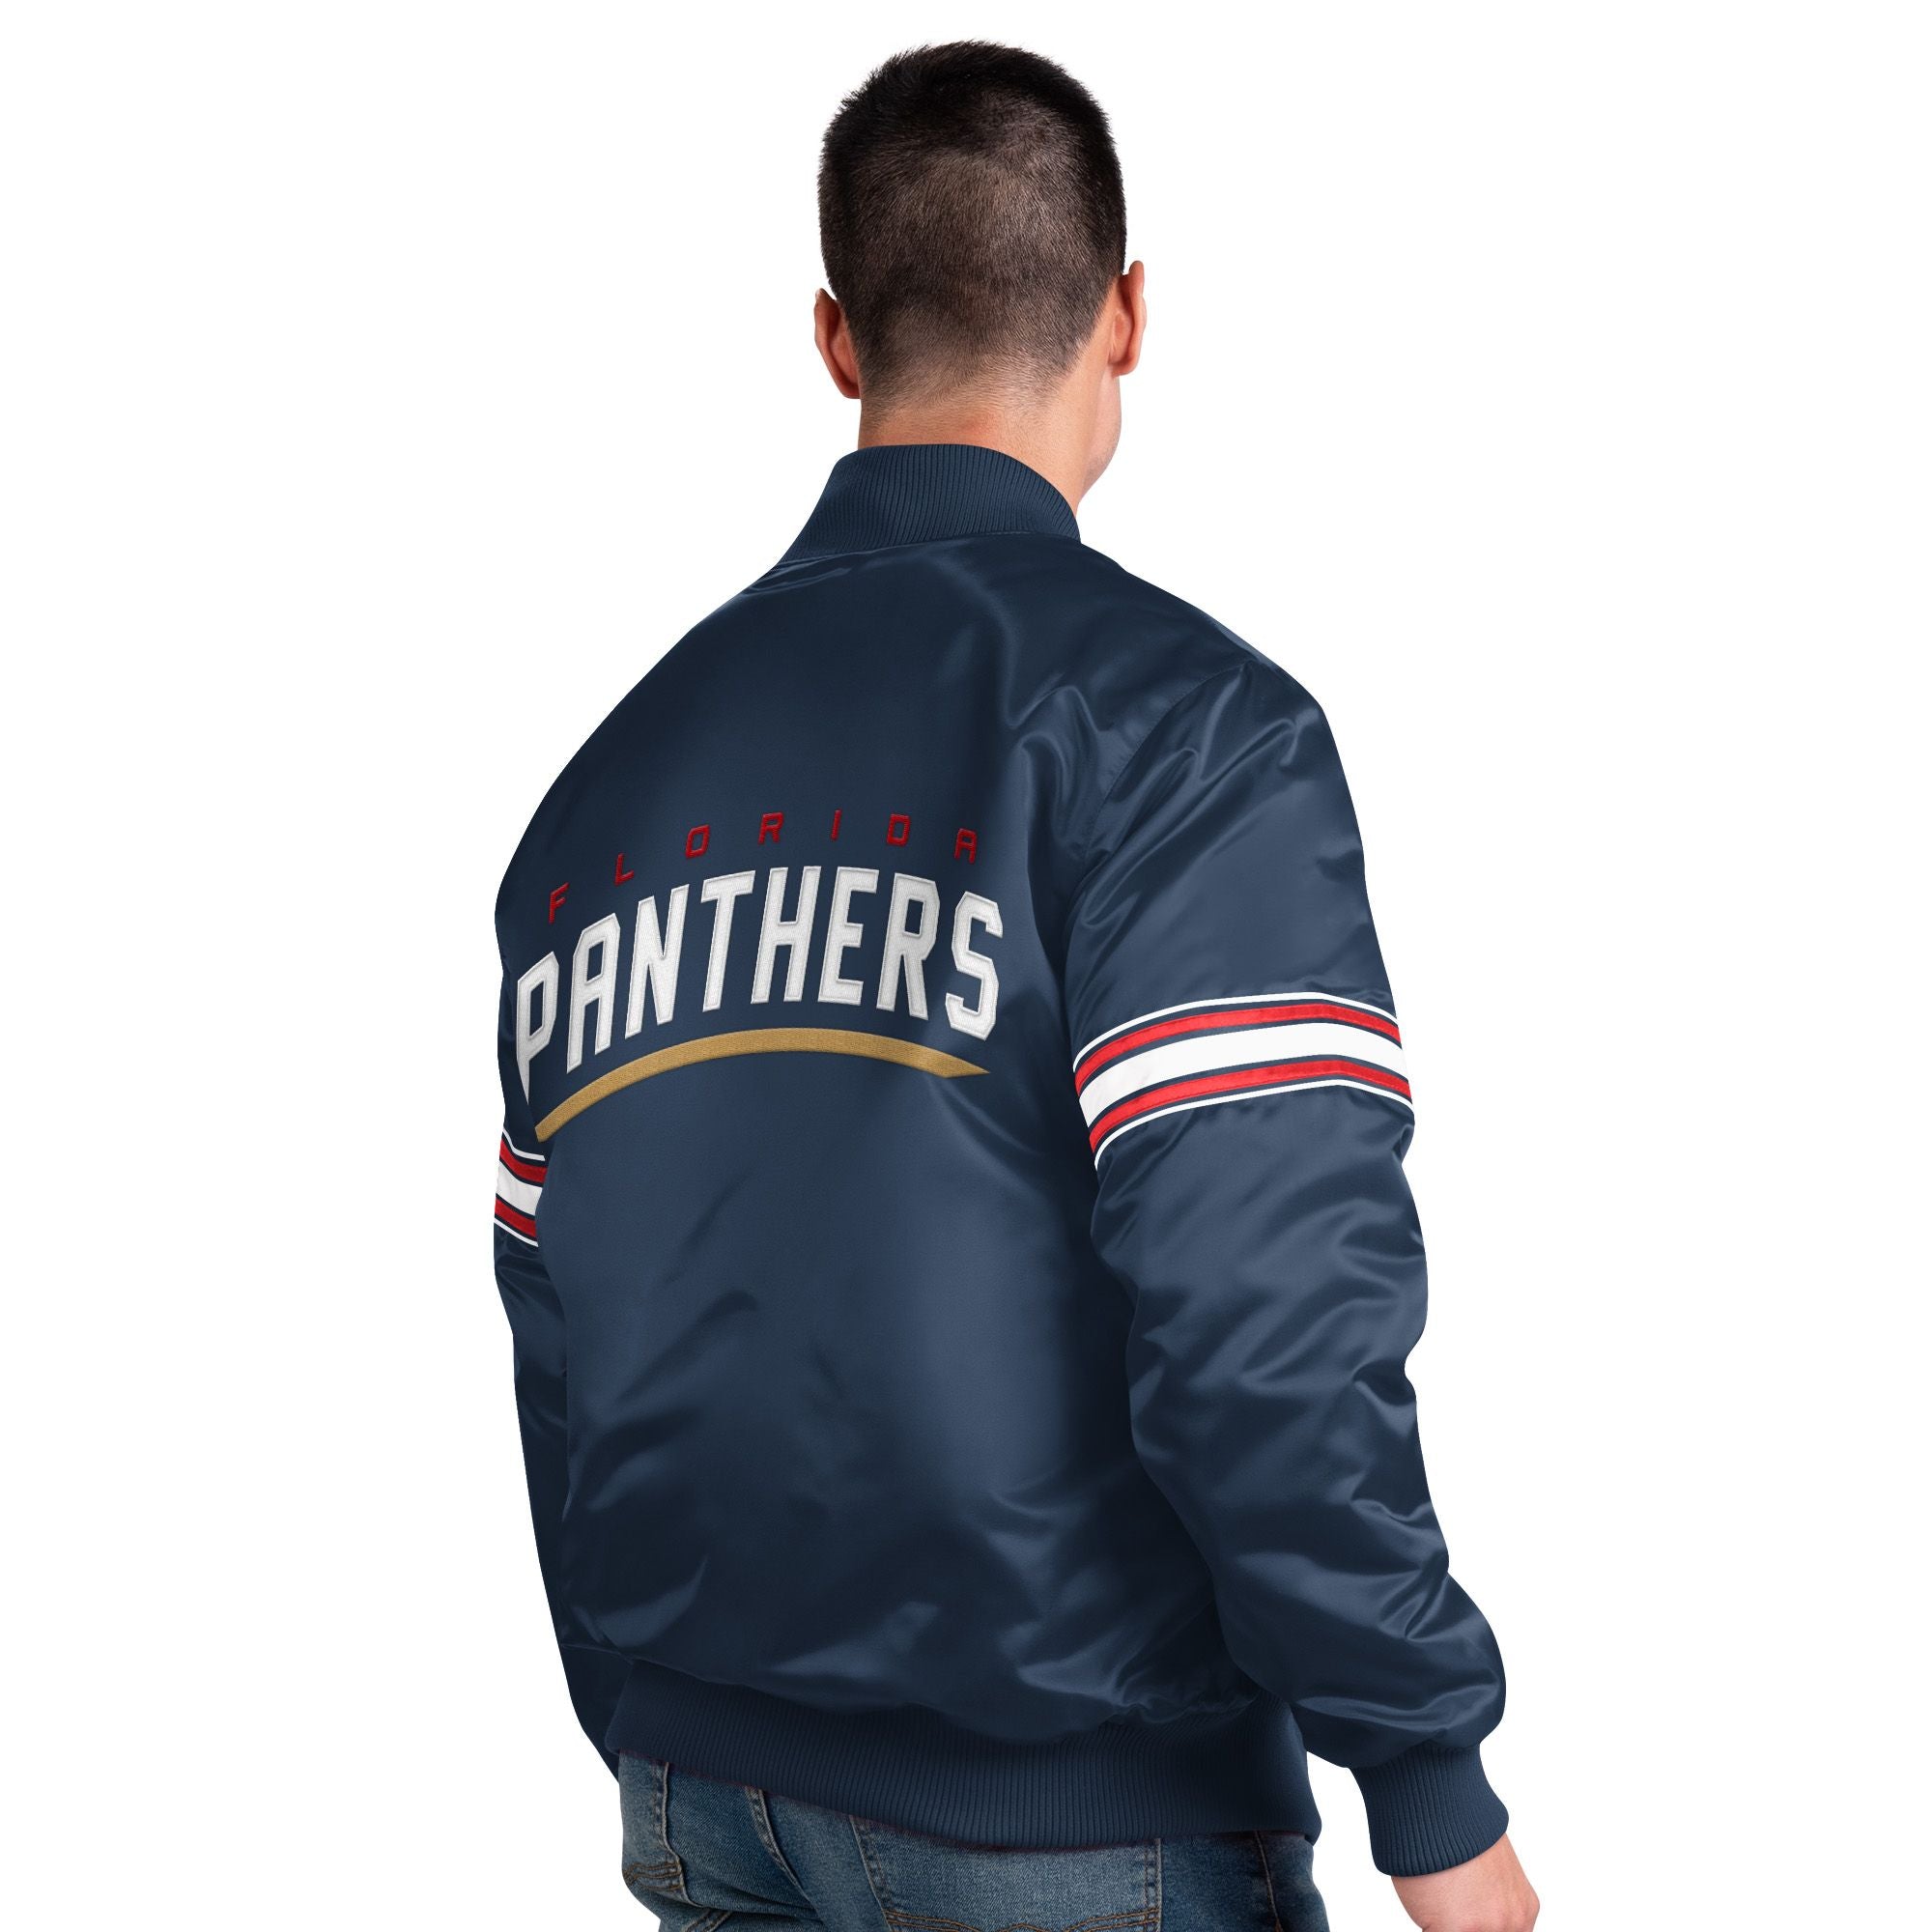 Florida Panthers Vintage Starter Jersey - Medium